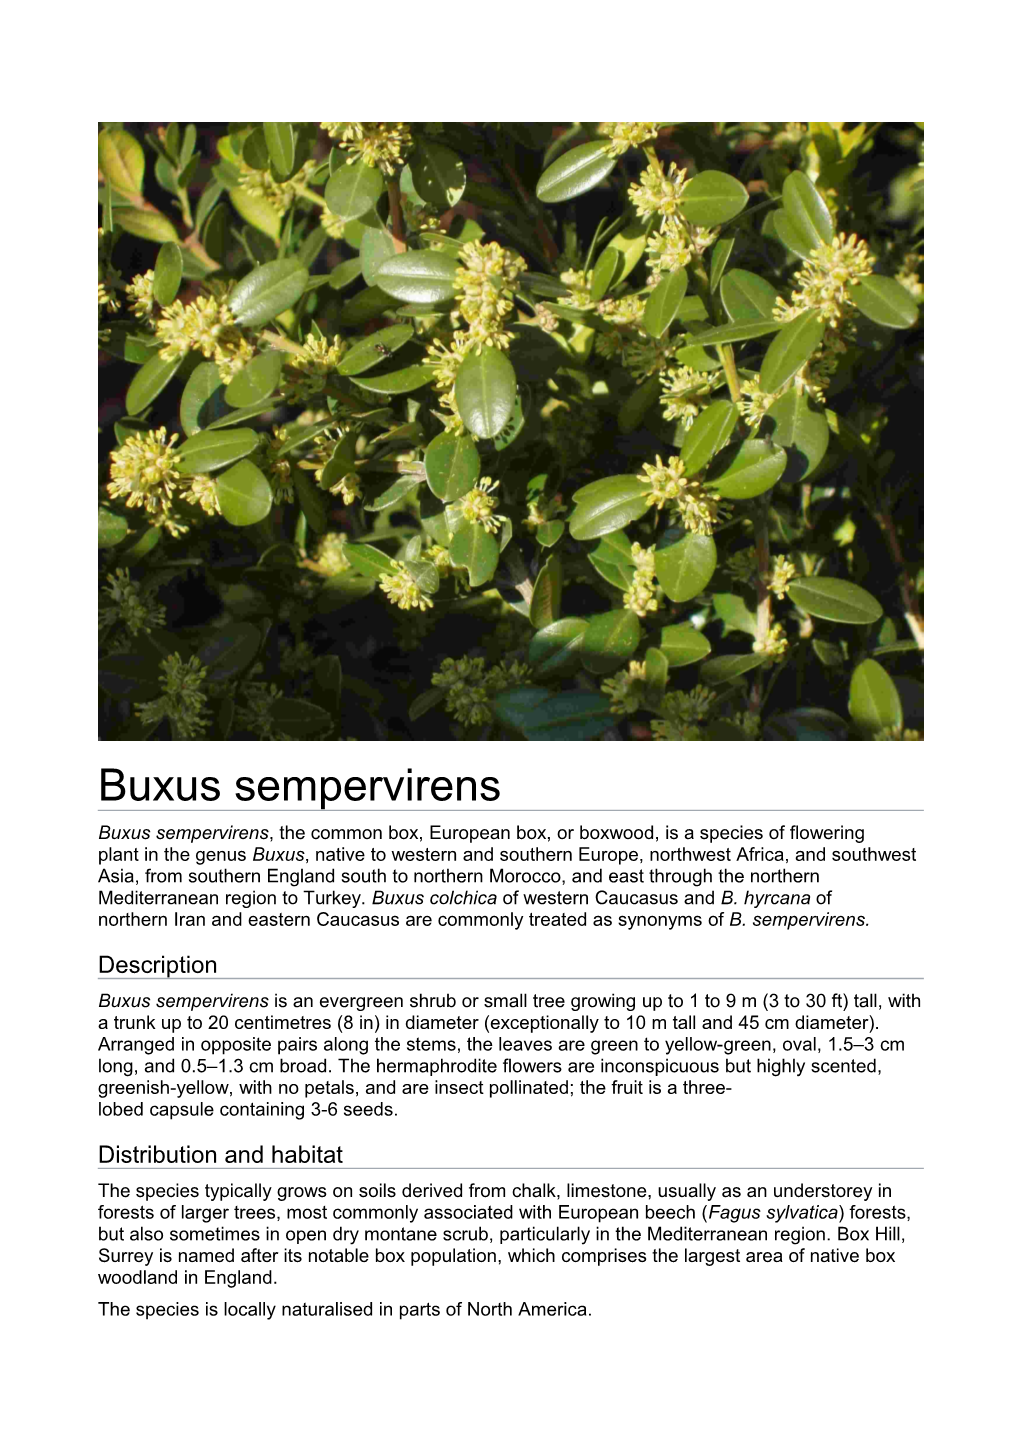 Buxus Sempervirens